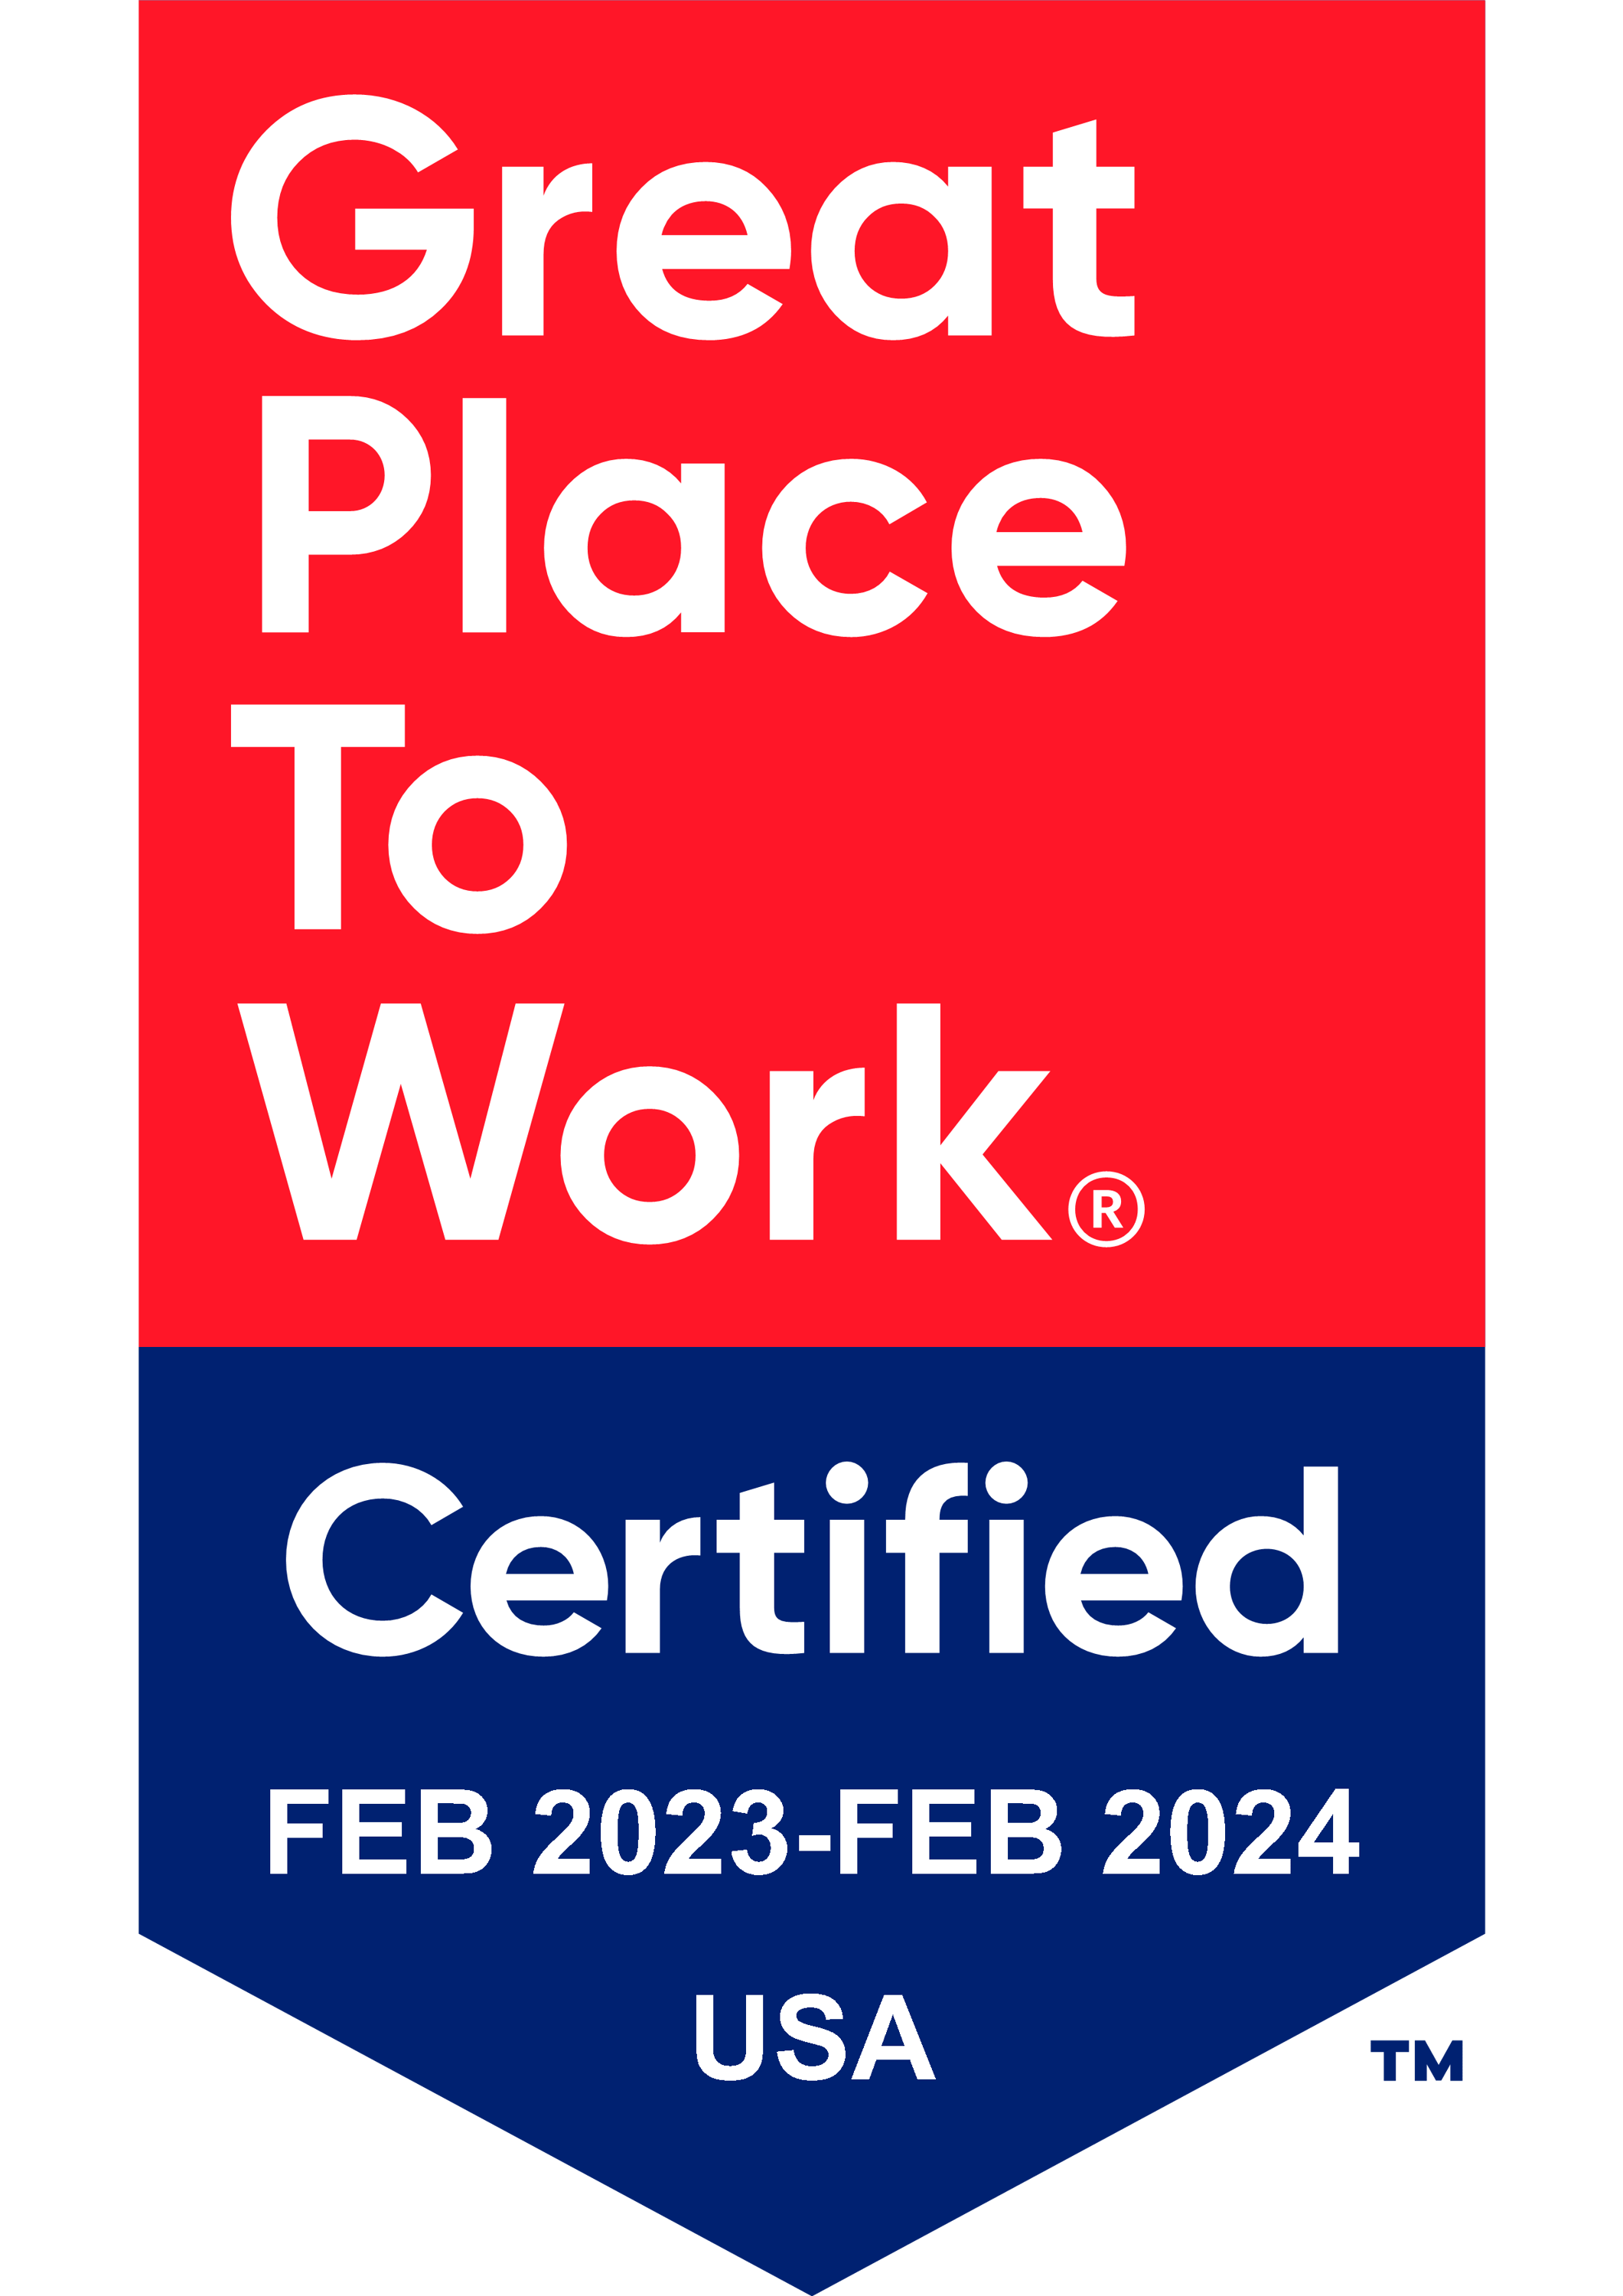 LEMOINE_2023_Certification_Badge